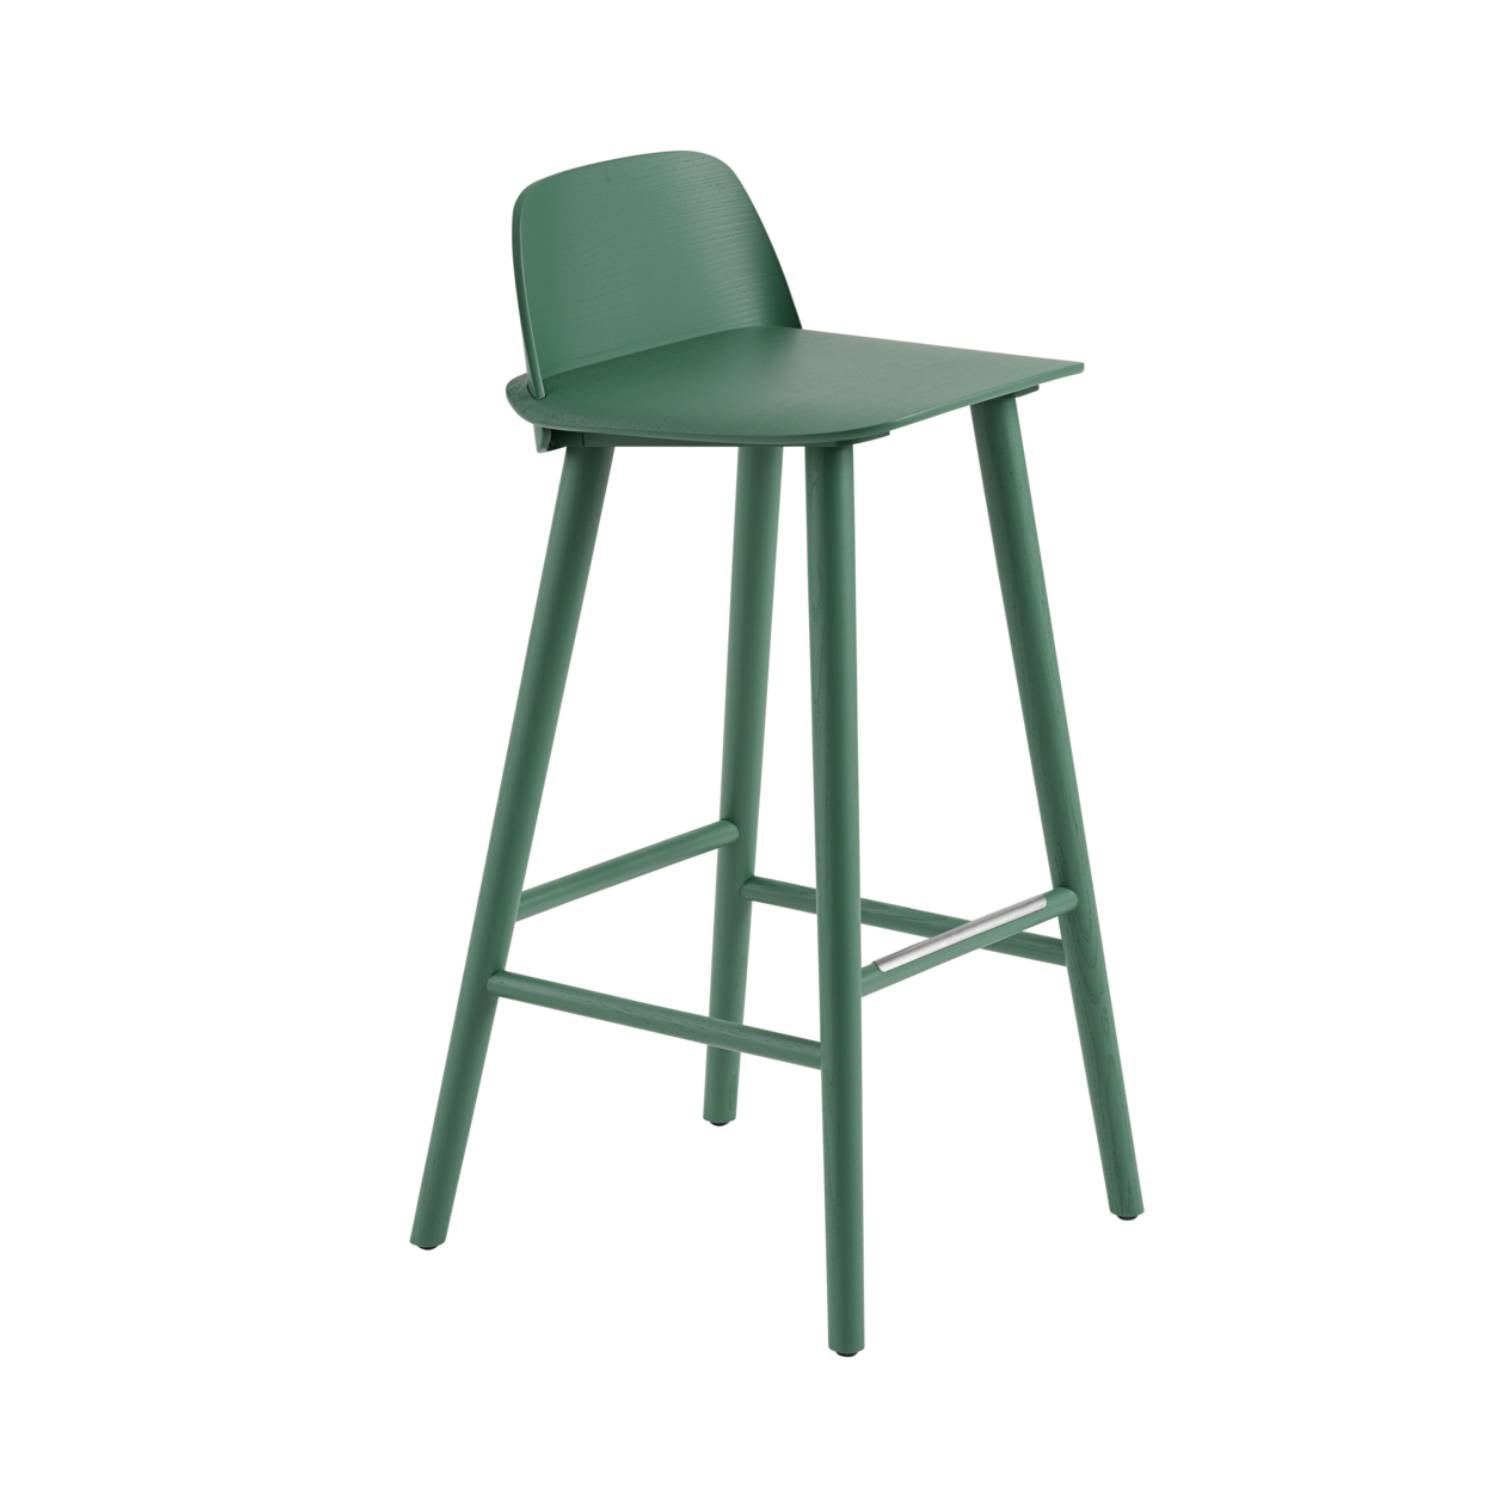 Nerd Bar + Counter Stool: Steel Footrest + Bar + Green